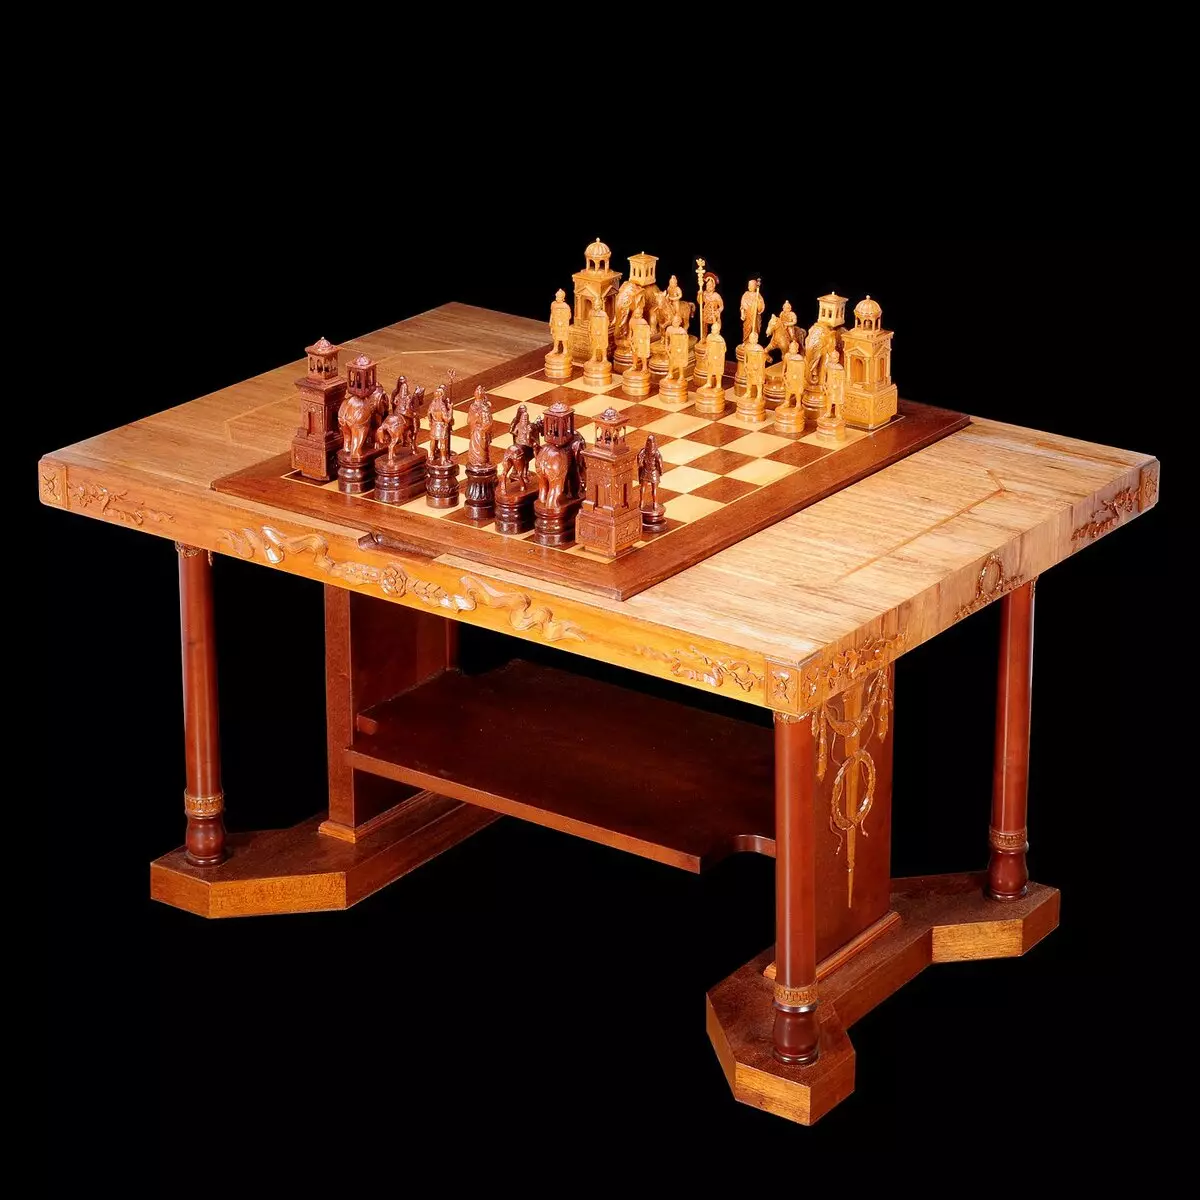 الاستخدام الإبداعي ل chessboard في الداخل